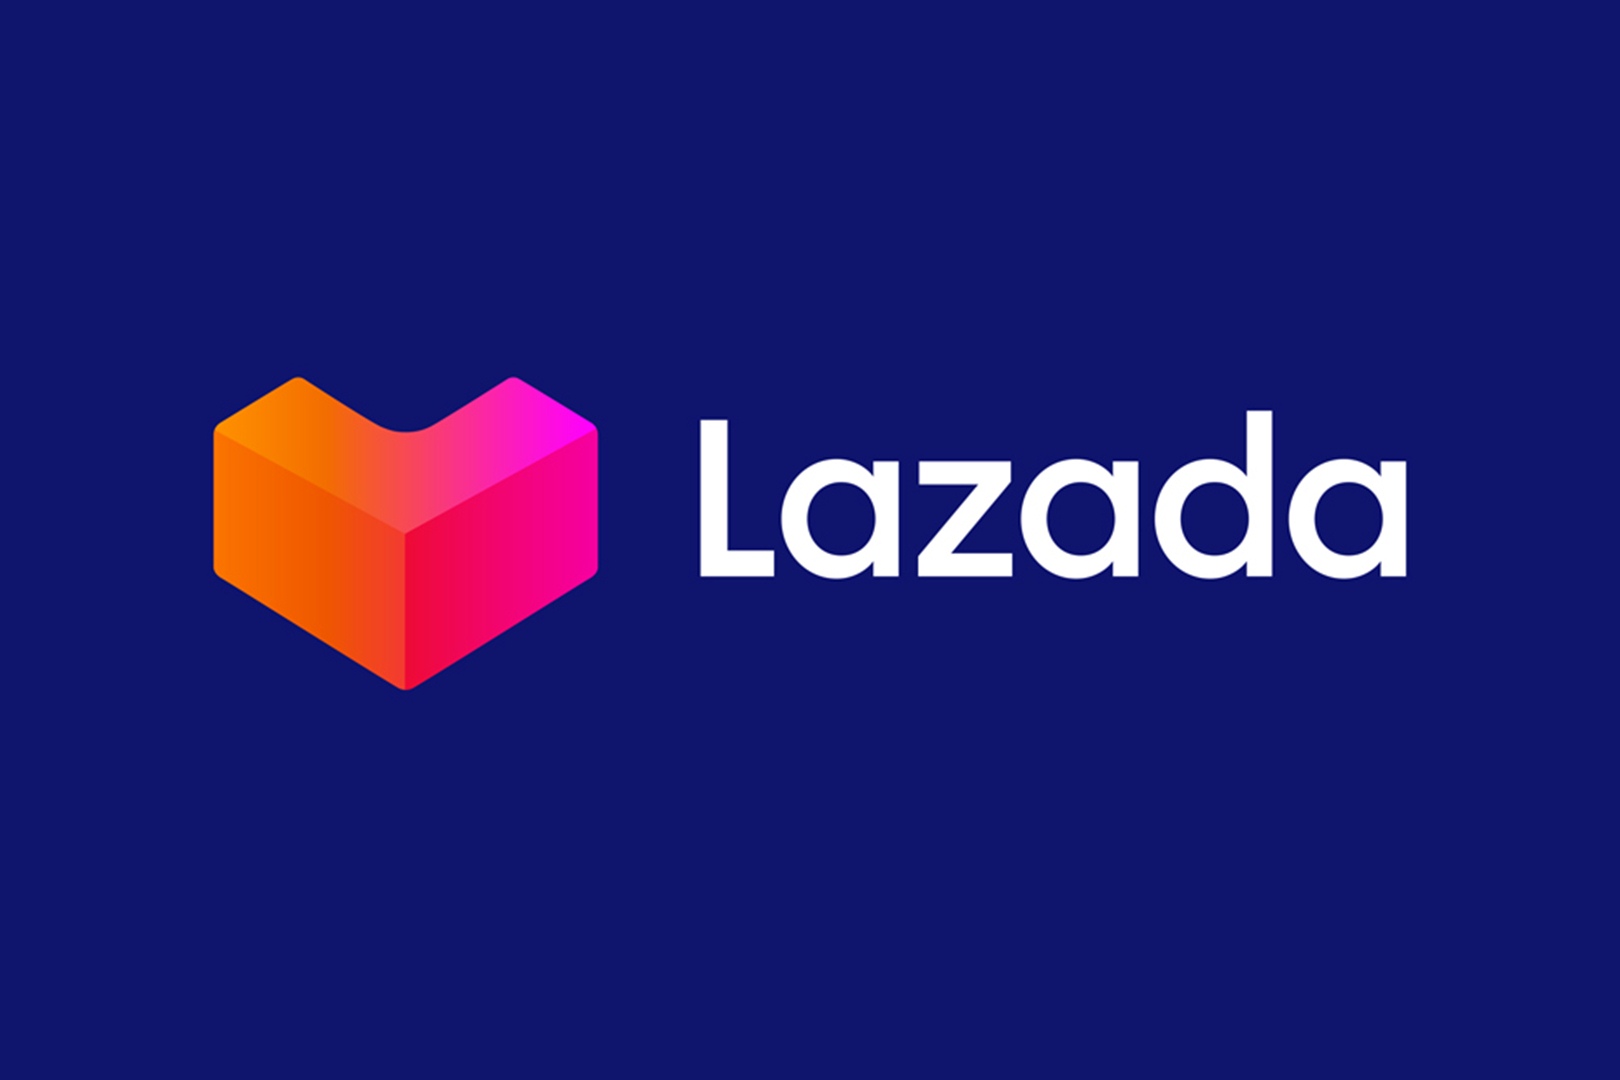 Cara Mudah Berjualan di Lazada, Auto Cuan